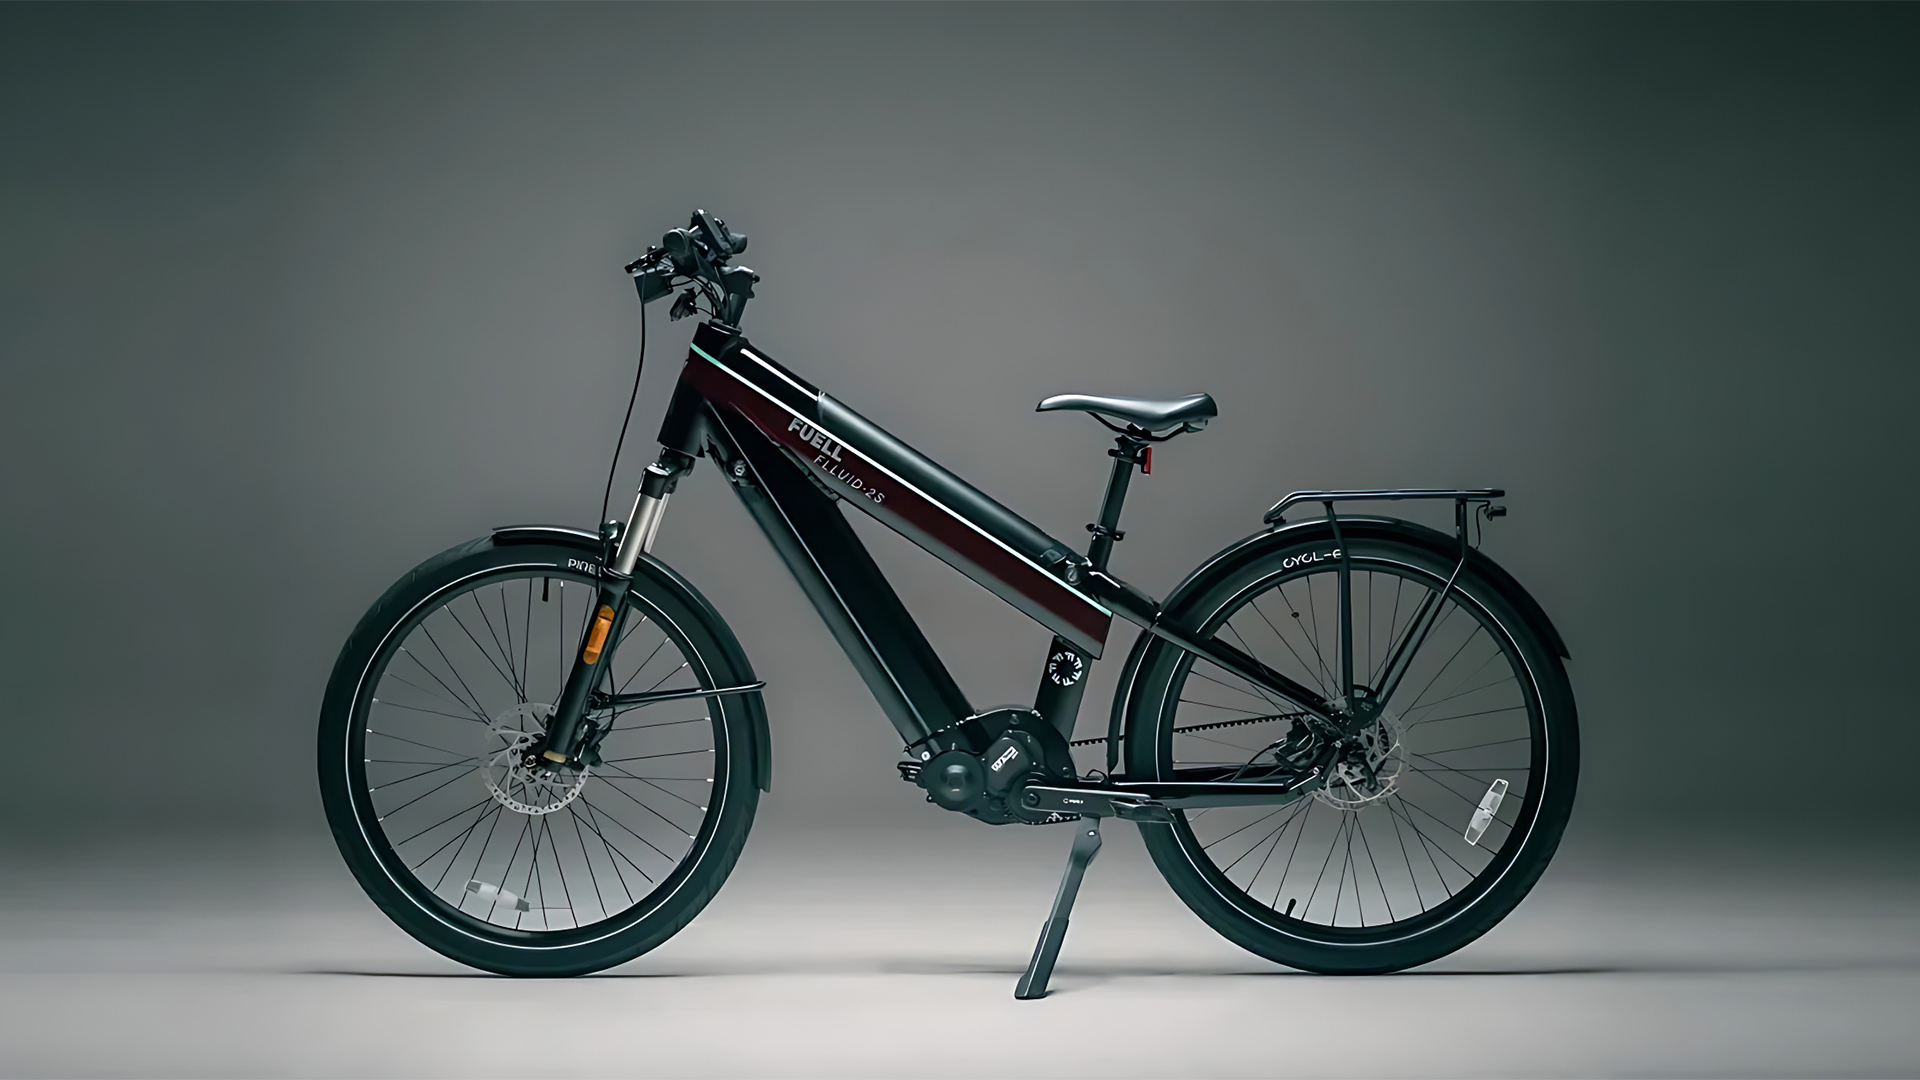 E-bike que desbanca carros elétricos, Fuell Flluid 2 tem duas baterias de lítio e uma incrível autonomia de 362 km